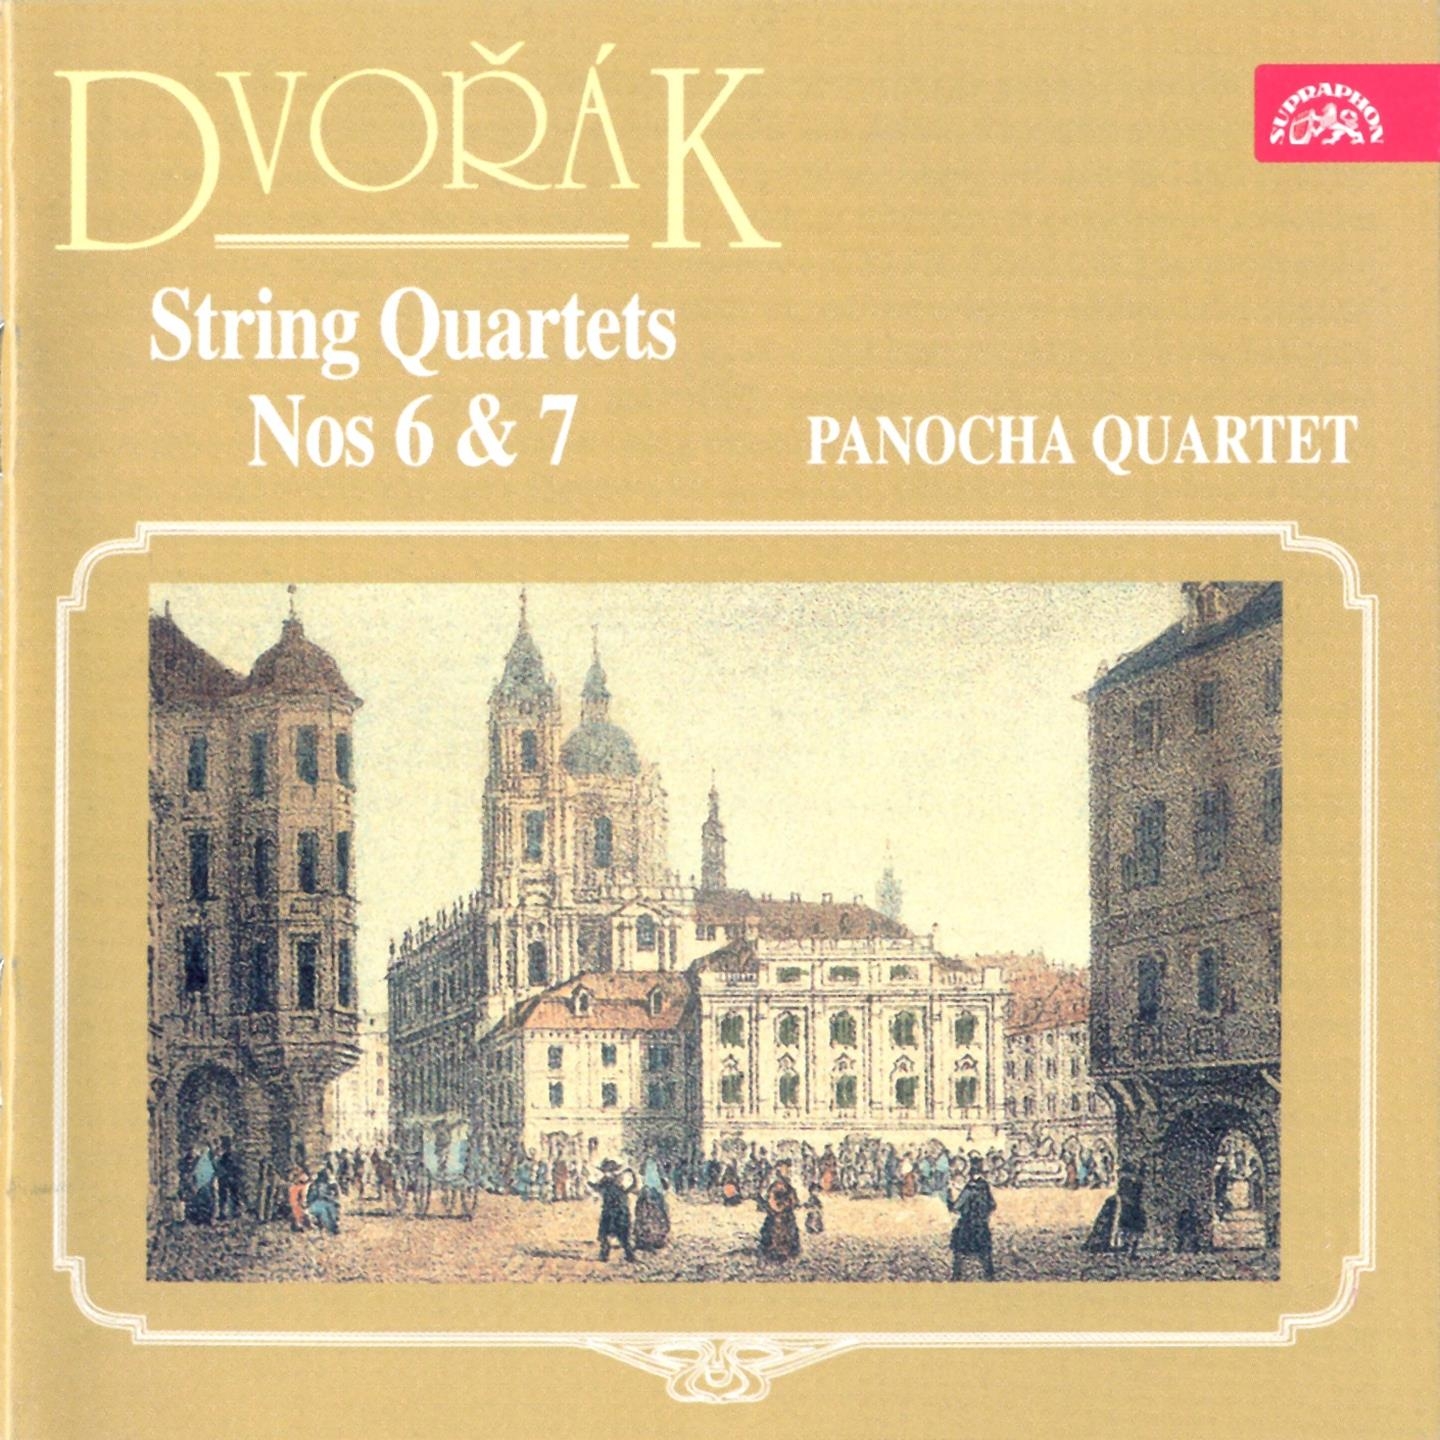 Dvoa k: String Quartets Nos. 6  7, Gavotte